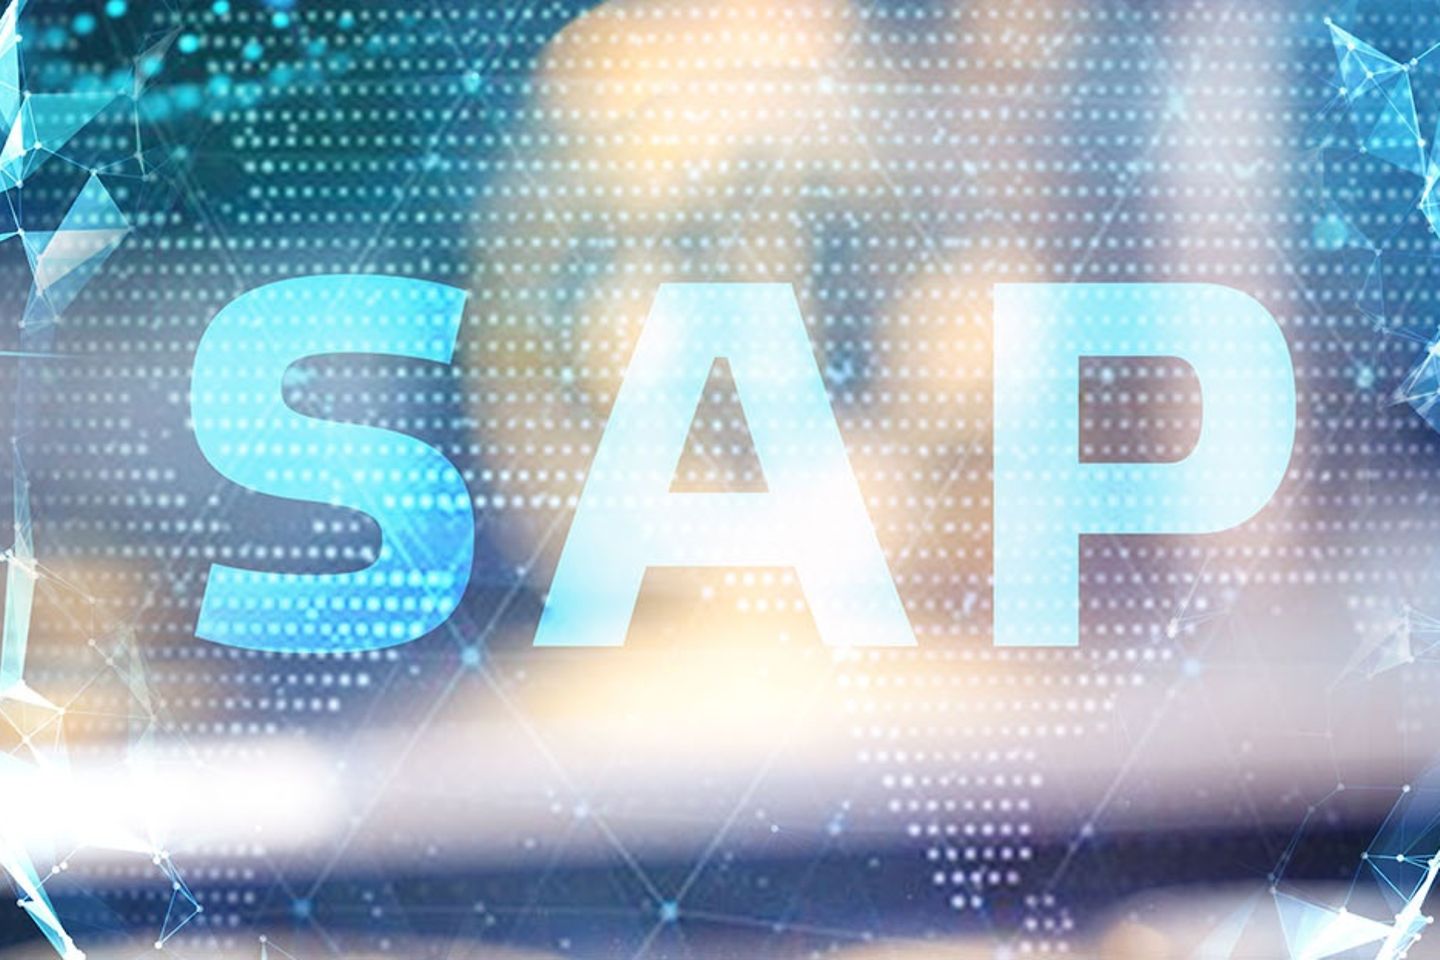 Uma apresentação virtual dos pontos conectados por meio de linhas, bem como o logotipo do SAP.